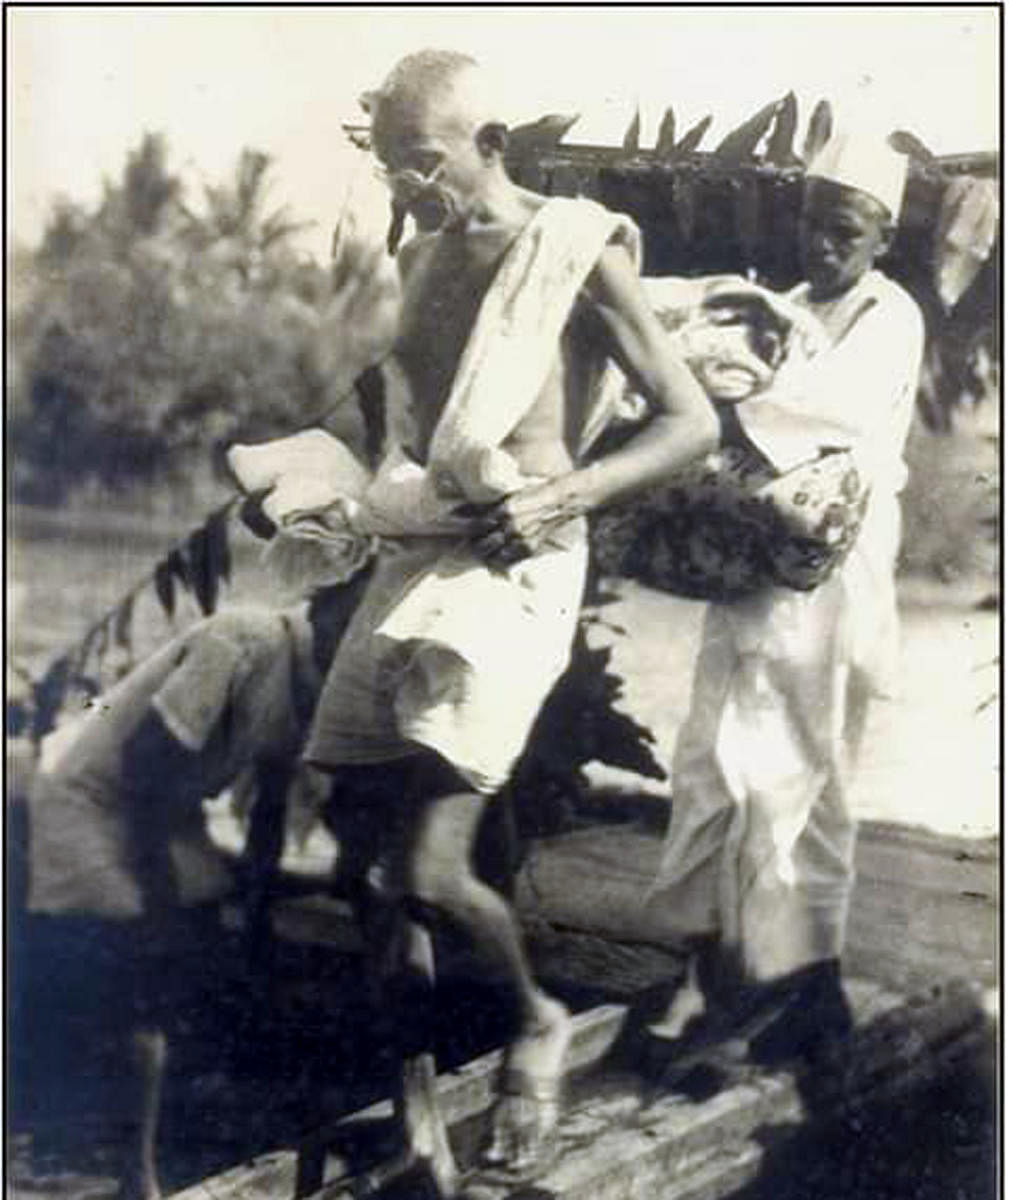 ಗಾಂಧೀಜಿ 1934ರಲ್ಲಿ ಉಡುಪಿಗೆ ಭೇಟಿ ನೀಡಿದ ಸಂದರ್ಭ. ಚಿತ್ರಕೃಪೆ: ಐಡಿಯಲ್‌ ಸ್ಟುಡಿಯೊ